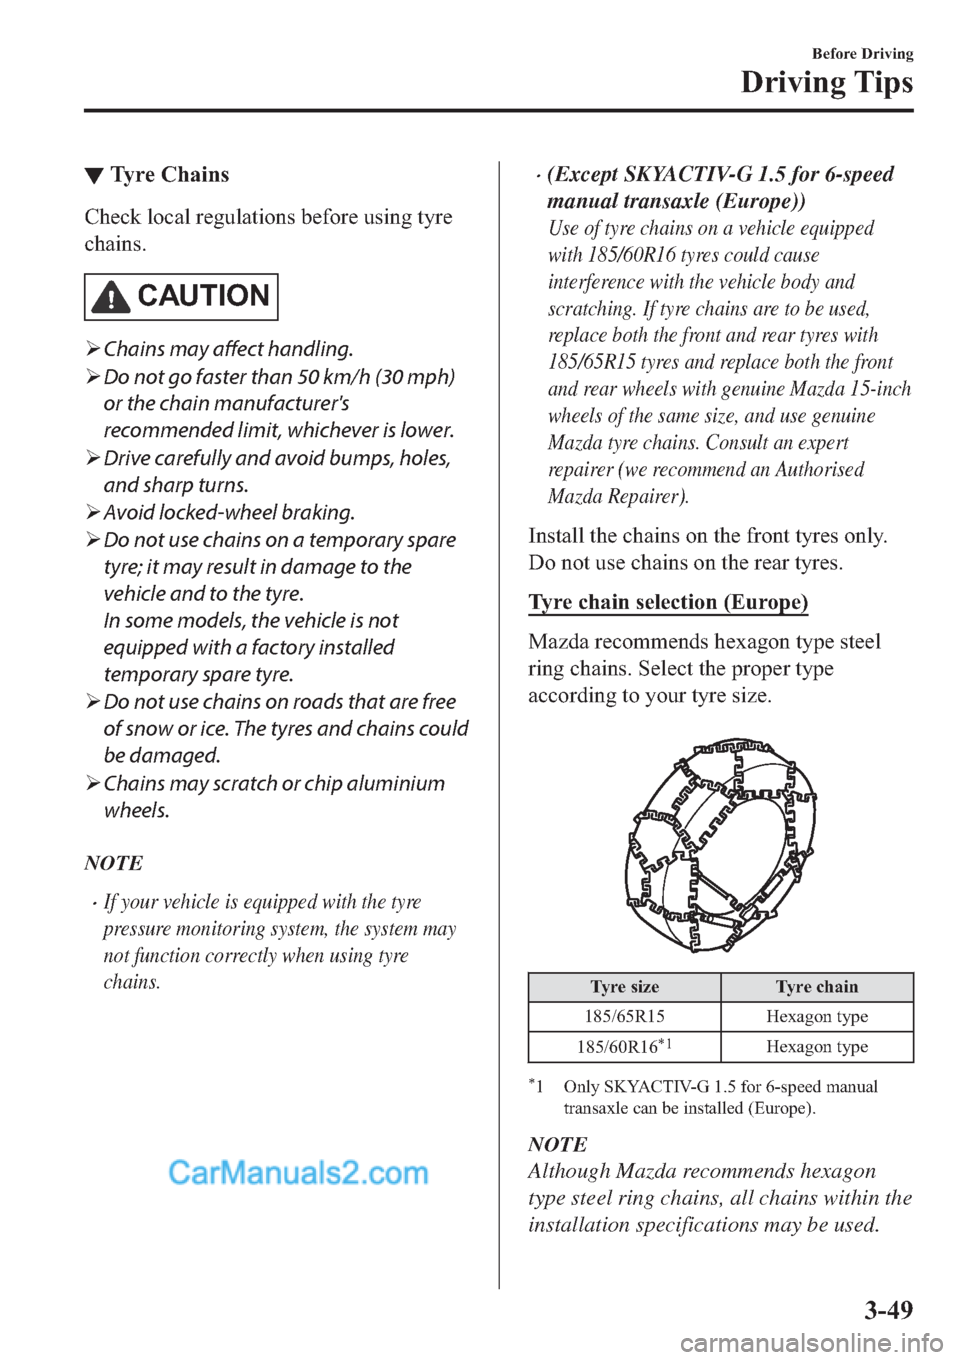 MAZDA MODEL 2 2019  Owners Manual (in English) ▼�7�\�U�H��&�K�D�L�Q�V
�&�K�H�F�N��O�R�F�D�O��U�H�J�X�O�D�W�L�R�Q�V��E�H�I�R�U�H��X�V�L�Q�J��W�\�U�H
�F�K�D�L�Q�V�
�&�$�8�7�,�2�1
�¾Chains may affect handling.
�¾Do not go faster than 50 km